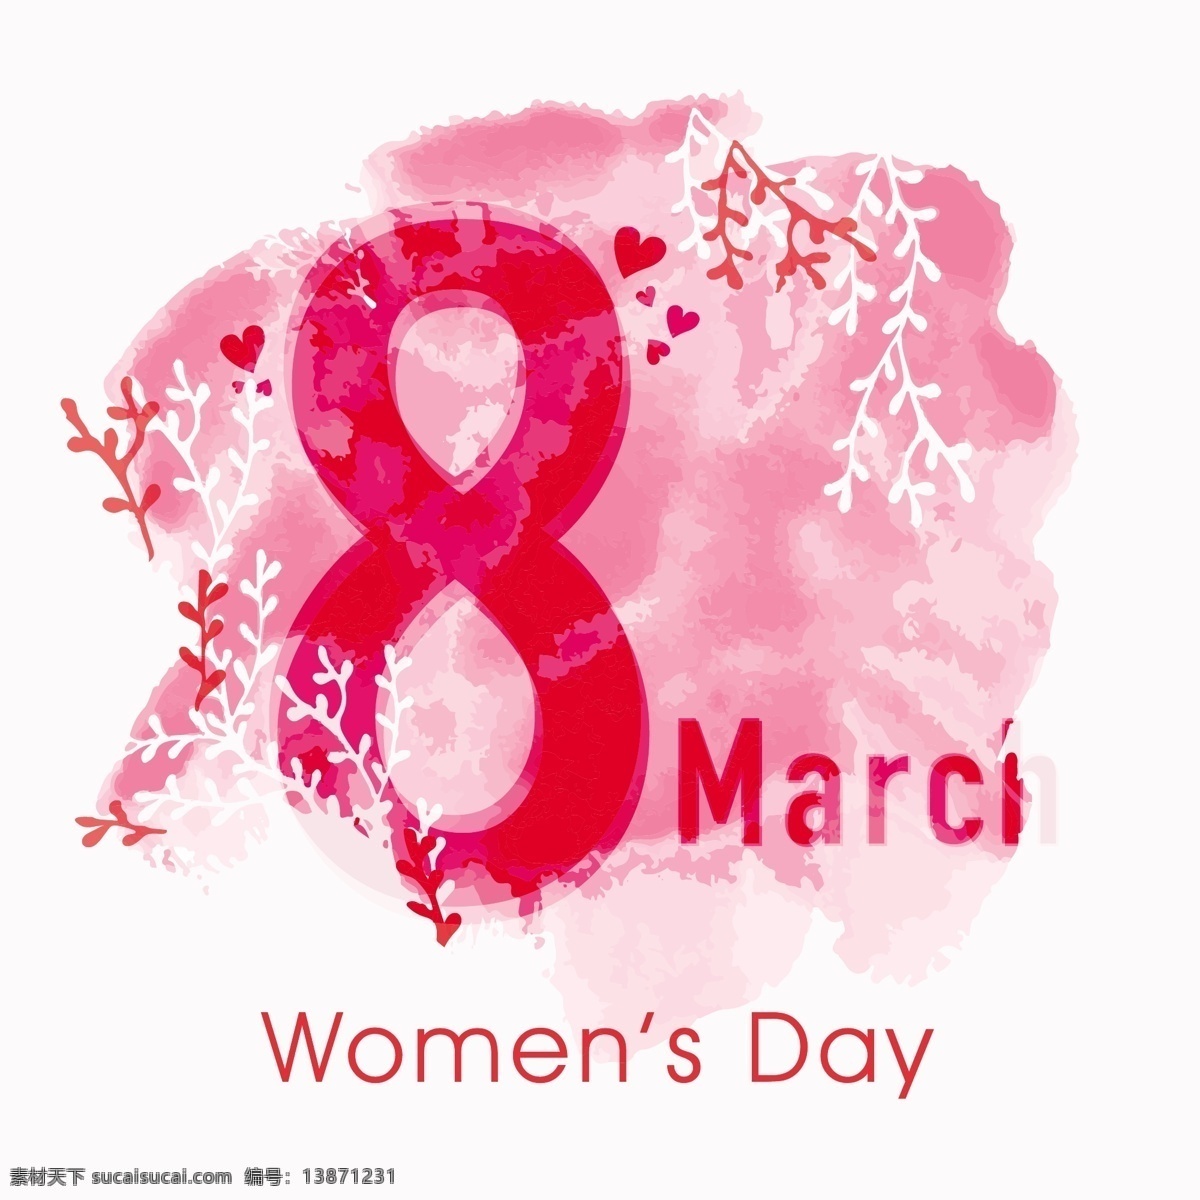 妇女节 粉红色 背景 花卉 花卉背景 颜色 庆祝活动 假日 丰富多彩 庆祝 女士 女性 自由 国际 日 背景色 三月 妇女 植被 色调